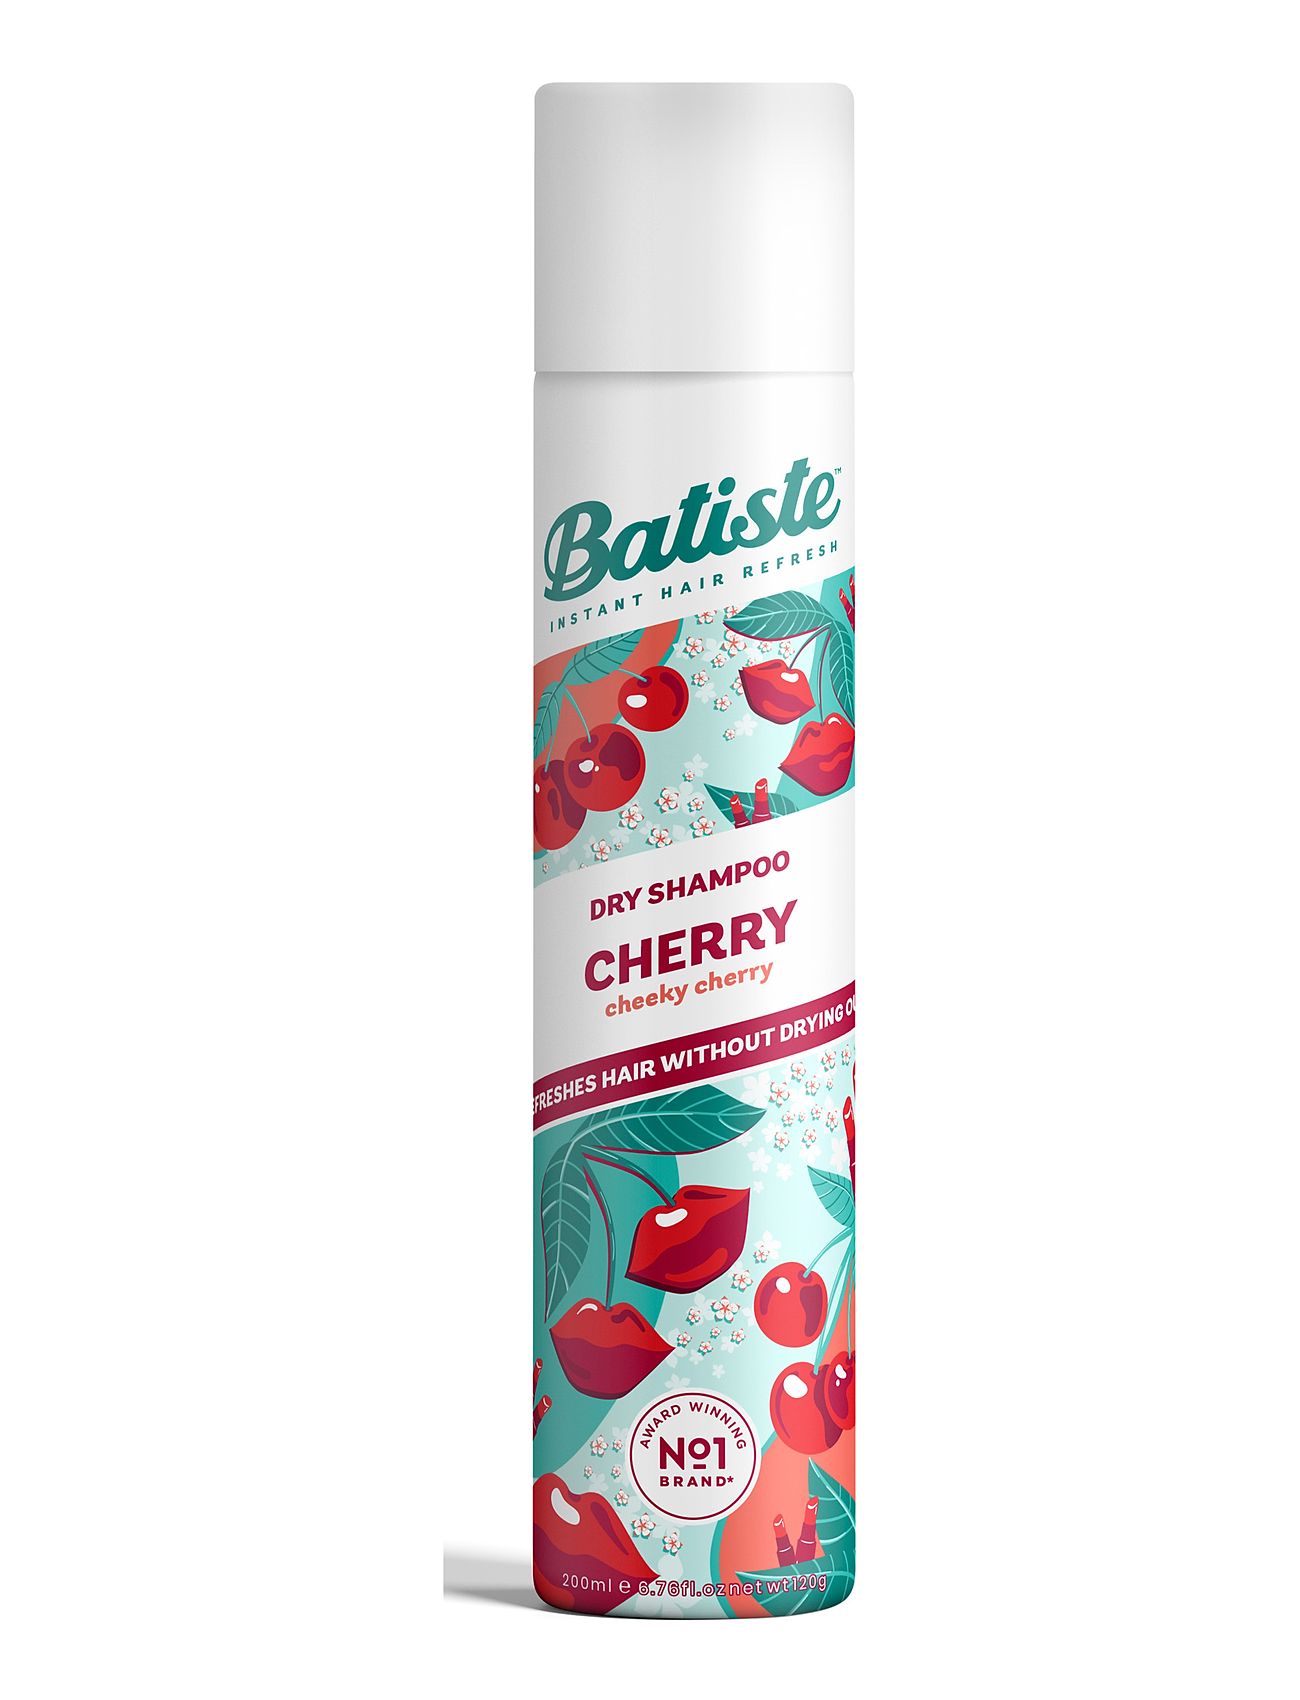 Batiste Cherry Beauty WOMEN Hair Styling Dry Shampoo Nude Batiste